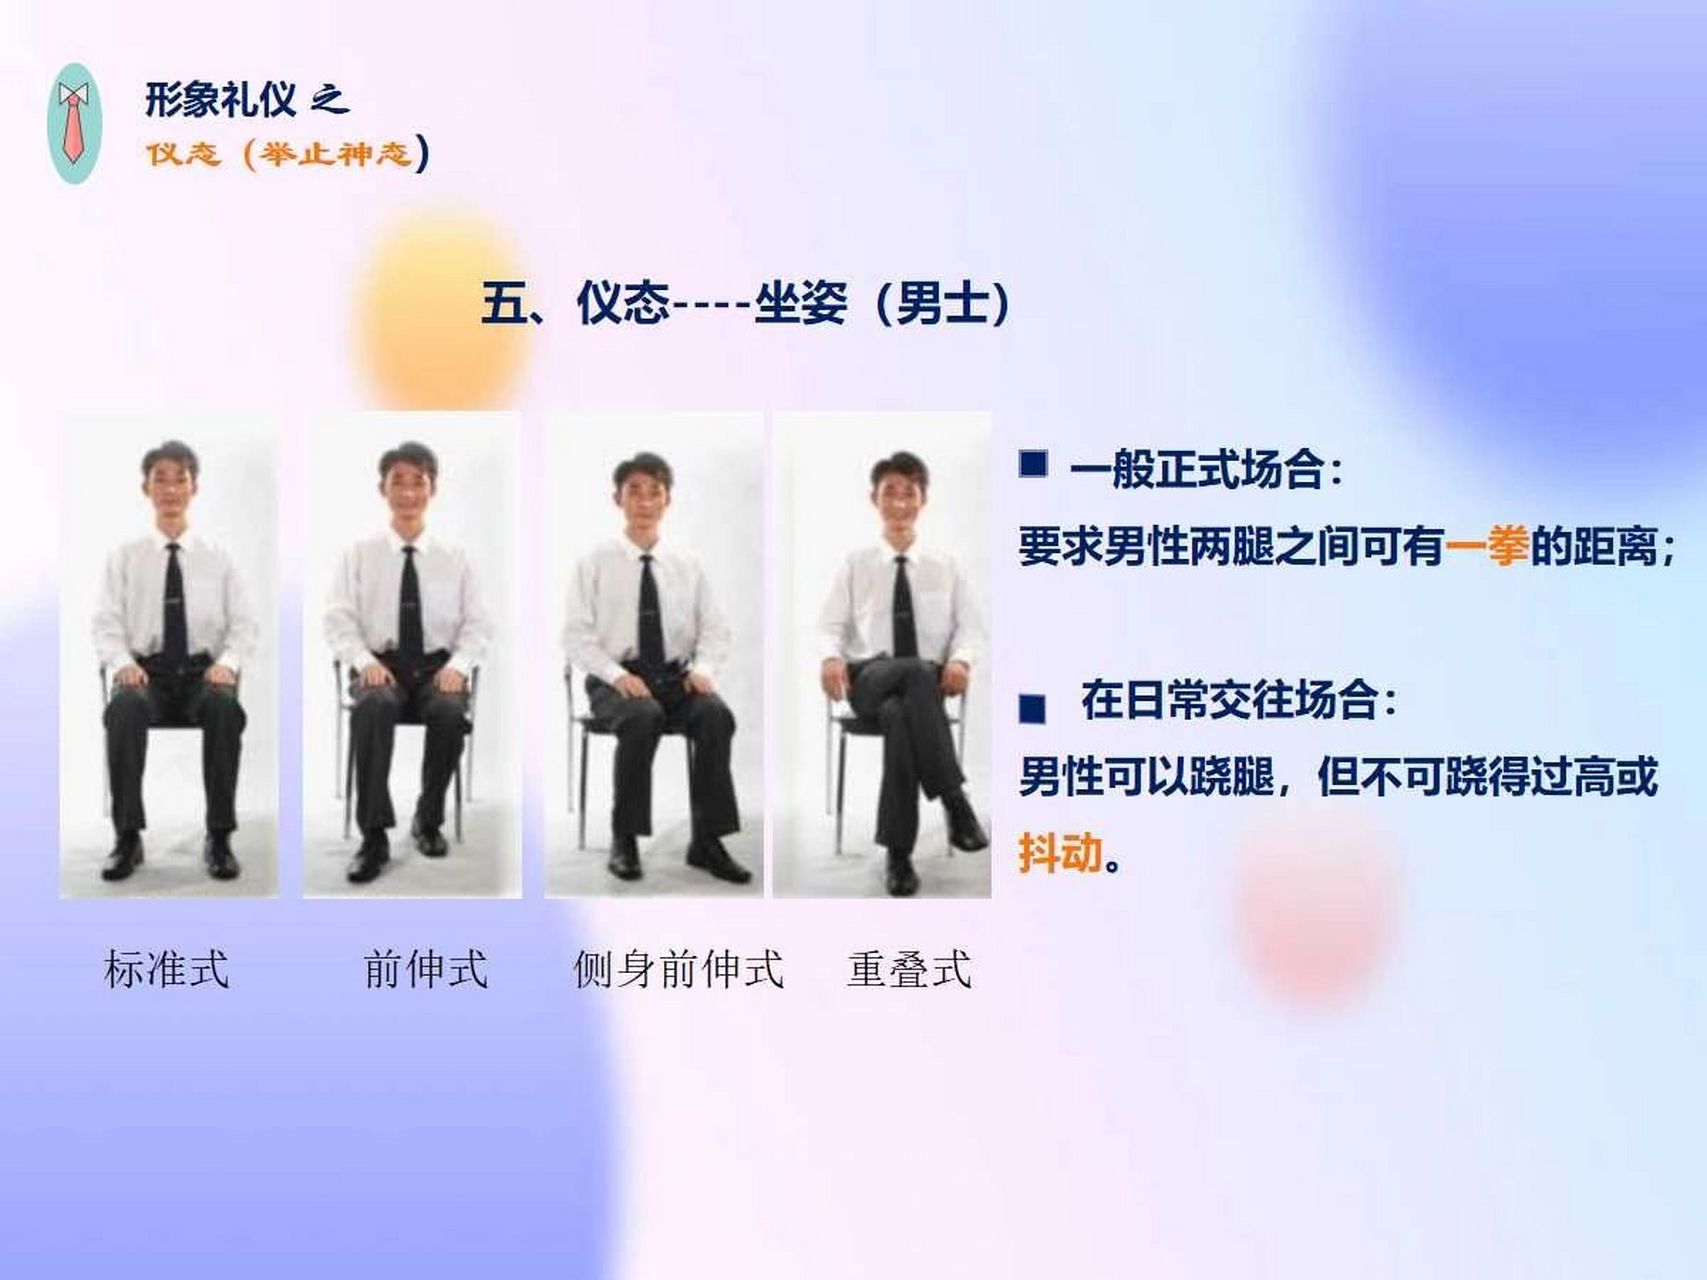 男士的四种坐姿 男士的四种坐姿:标准式,前伸式,侧身前伸式,重叠词